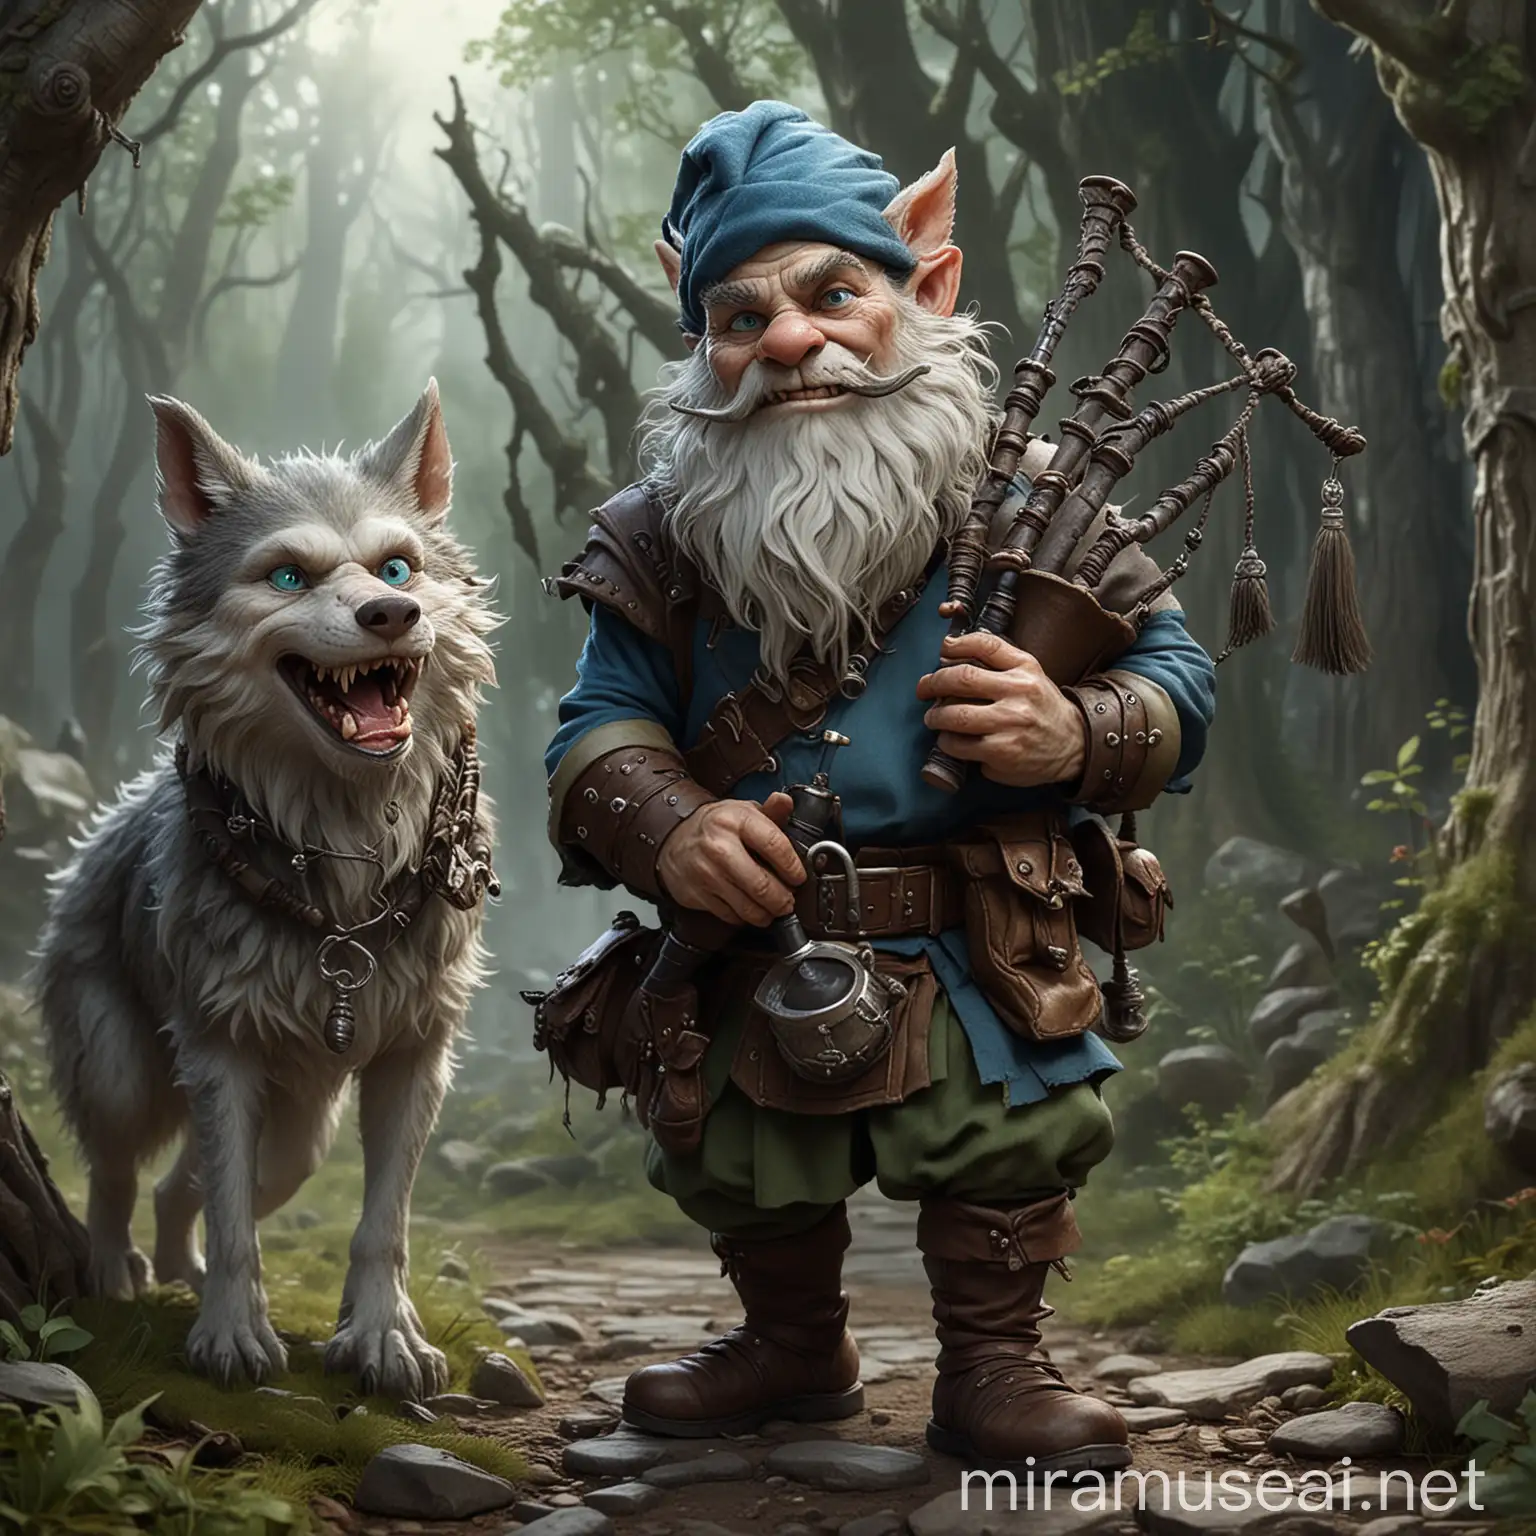 Un gnome jouant de la cornemuse et chevauchant un loup. Il a la peau verdâtre, il est plutôt affiné, possède des yeux bleus et à l'air menaçant. Ce personnage fait partie de l'univers de donjons et dragons.